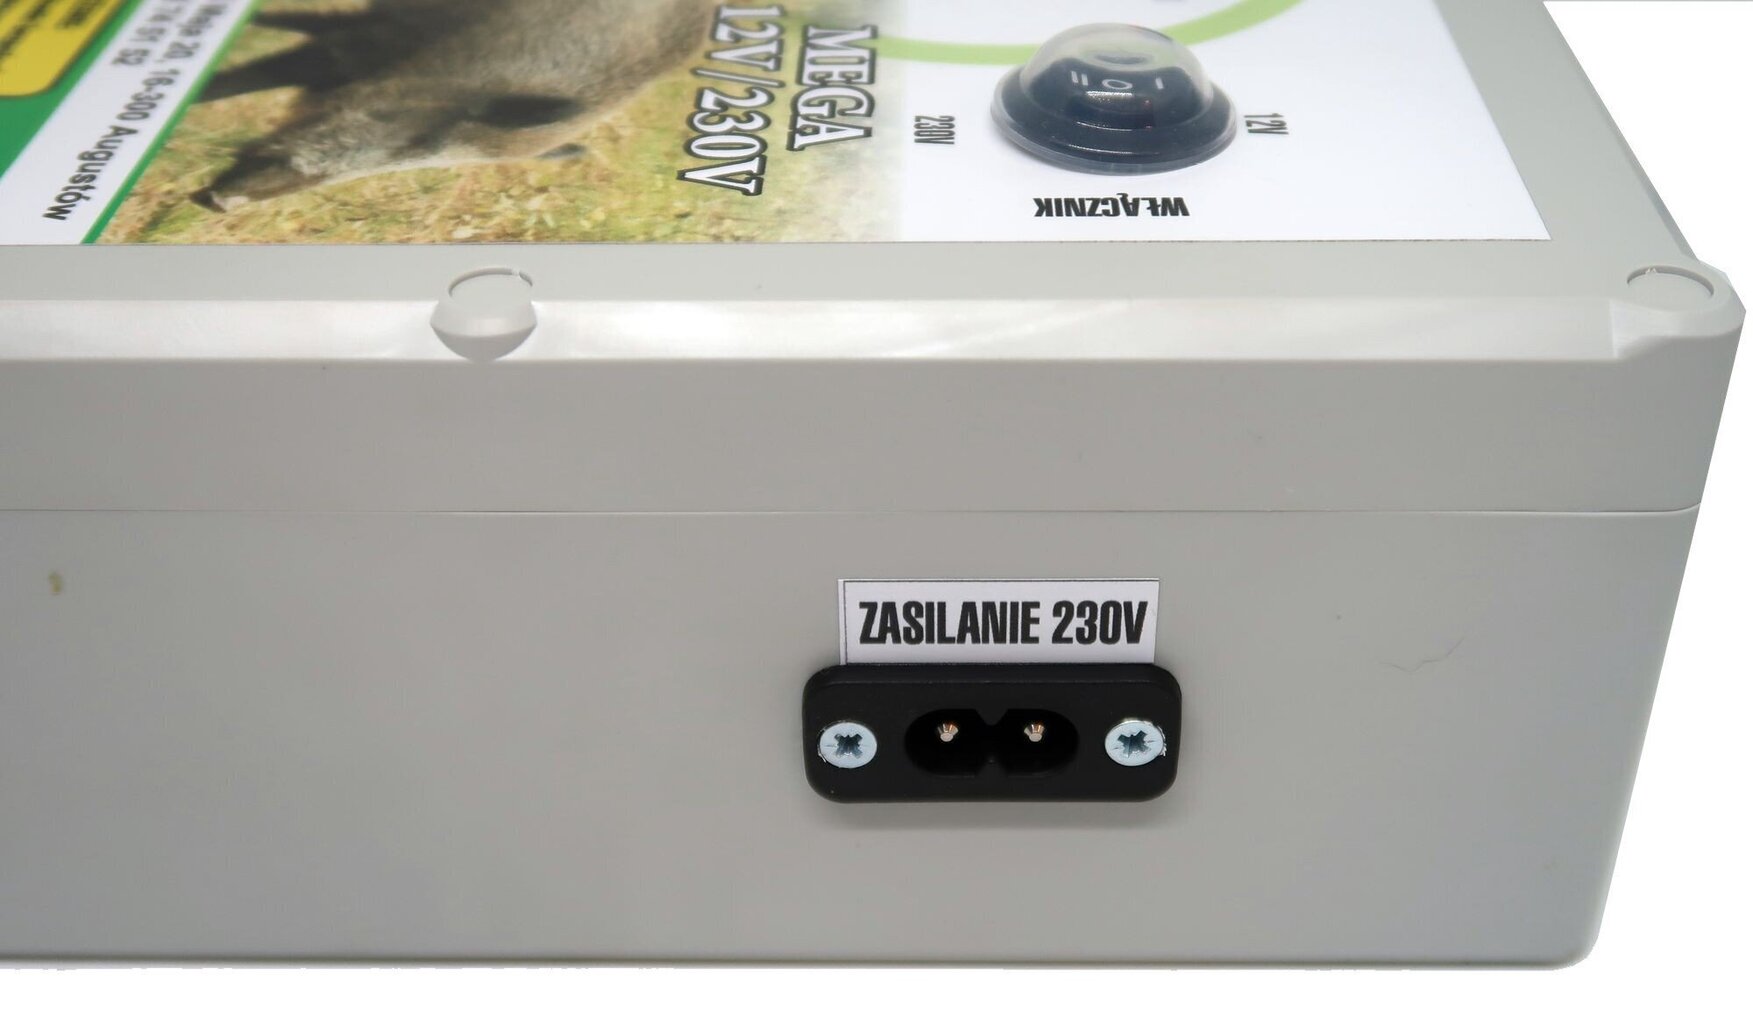 Elektriline lambakoer NEW-ELE EPU-6J MEGA 12/230V (6.0J) Loodud metsloomade piiramiseks. цена и информация | Kaubad kariloomadele | kaup24.ee